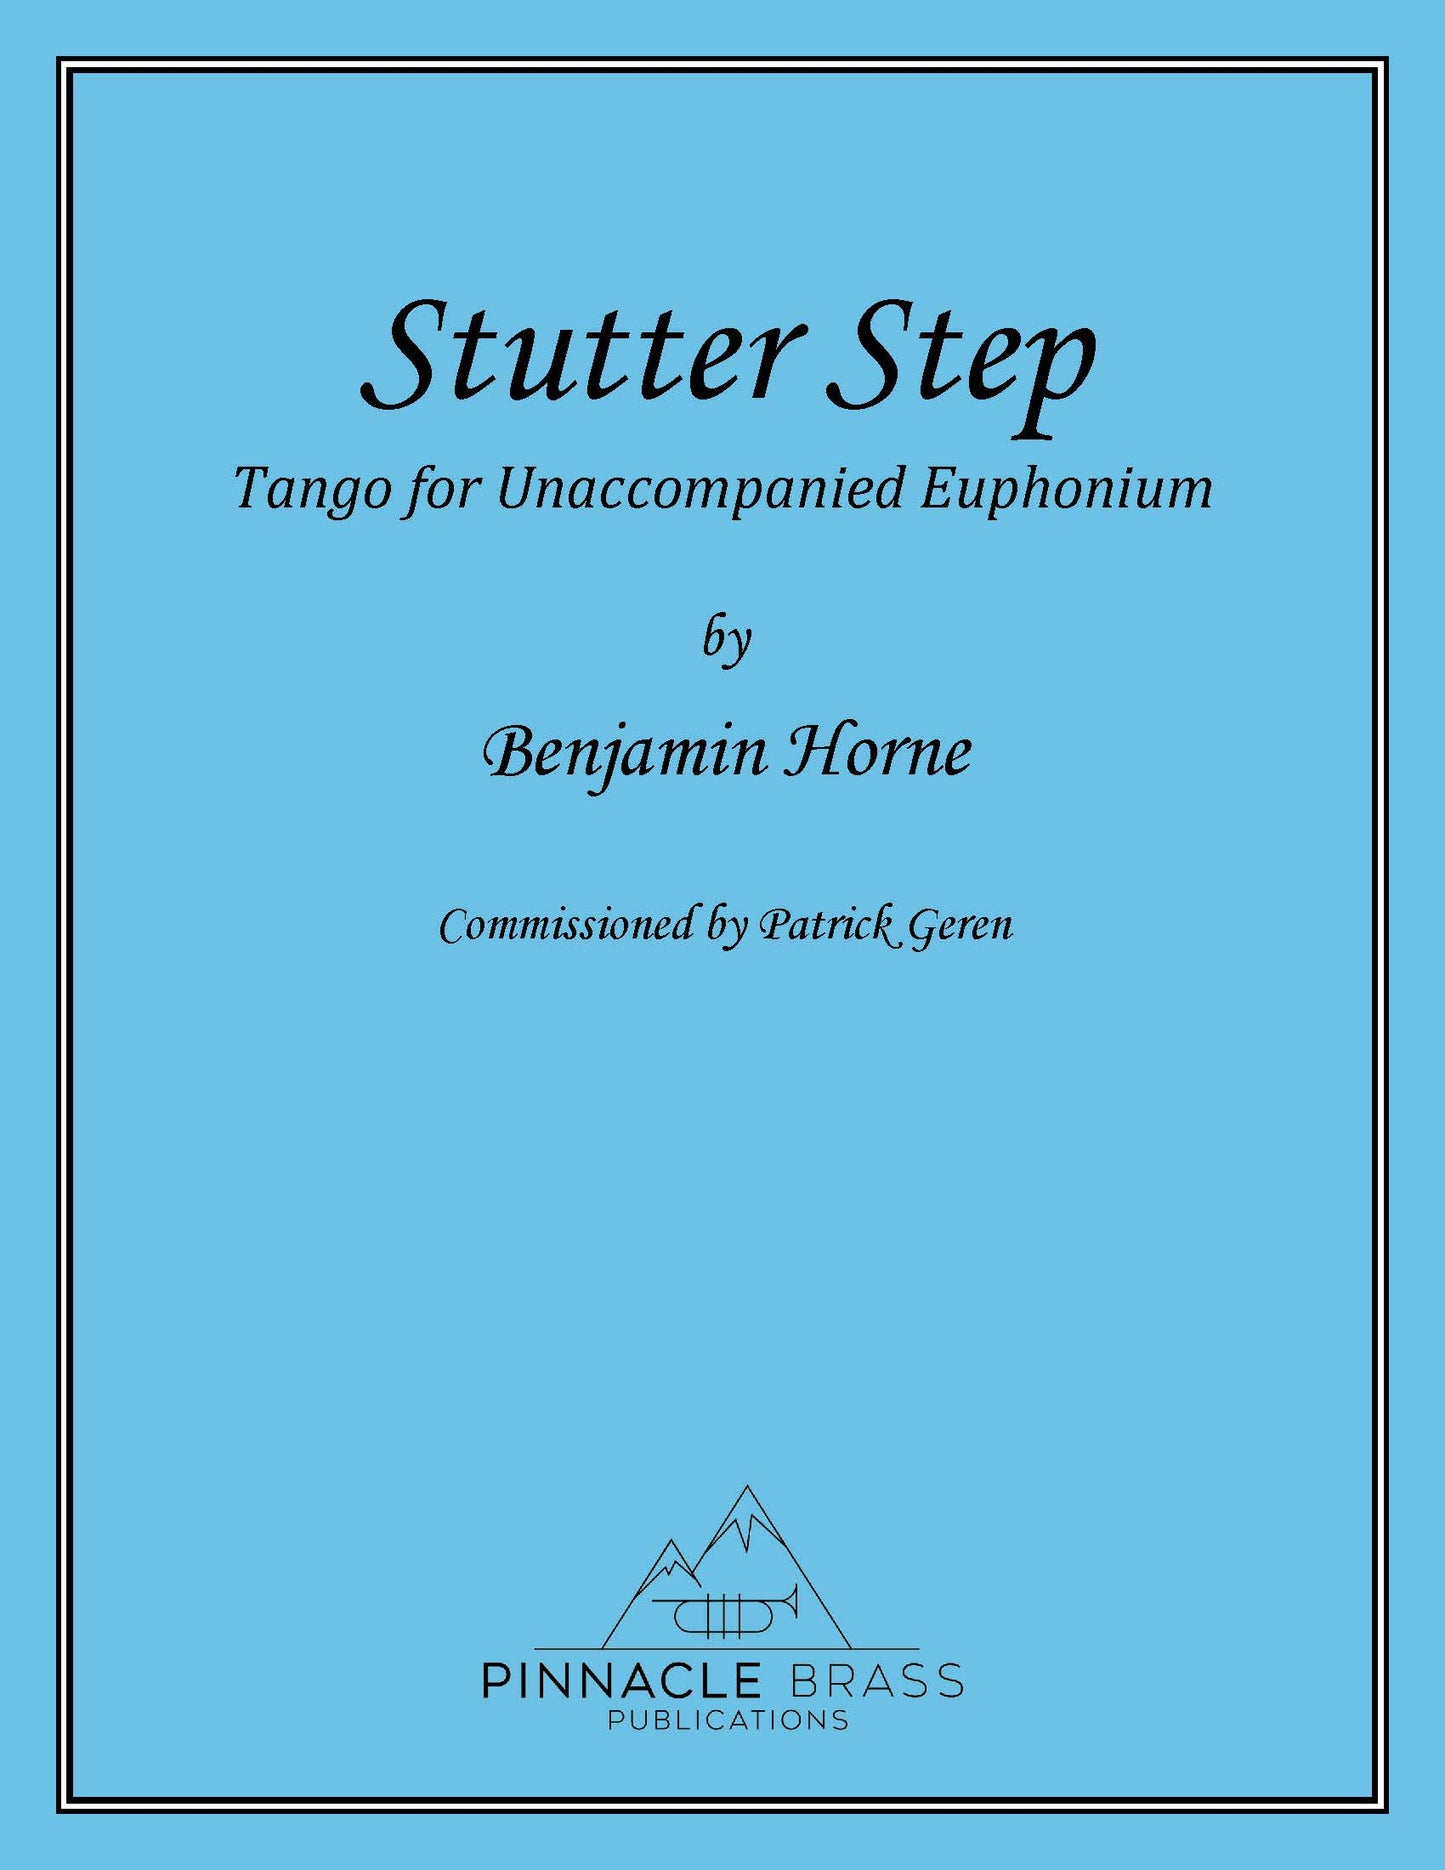 Horne - Stutter Step